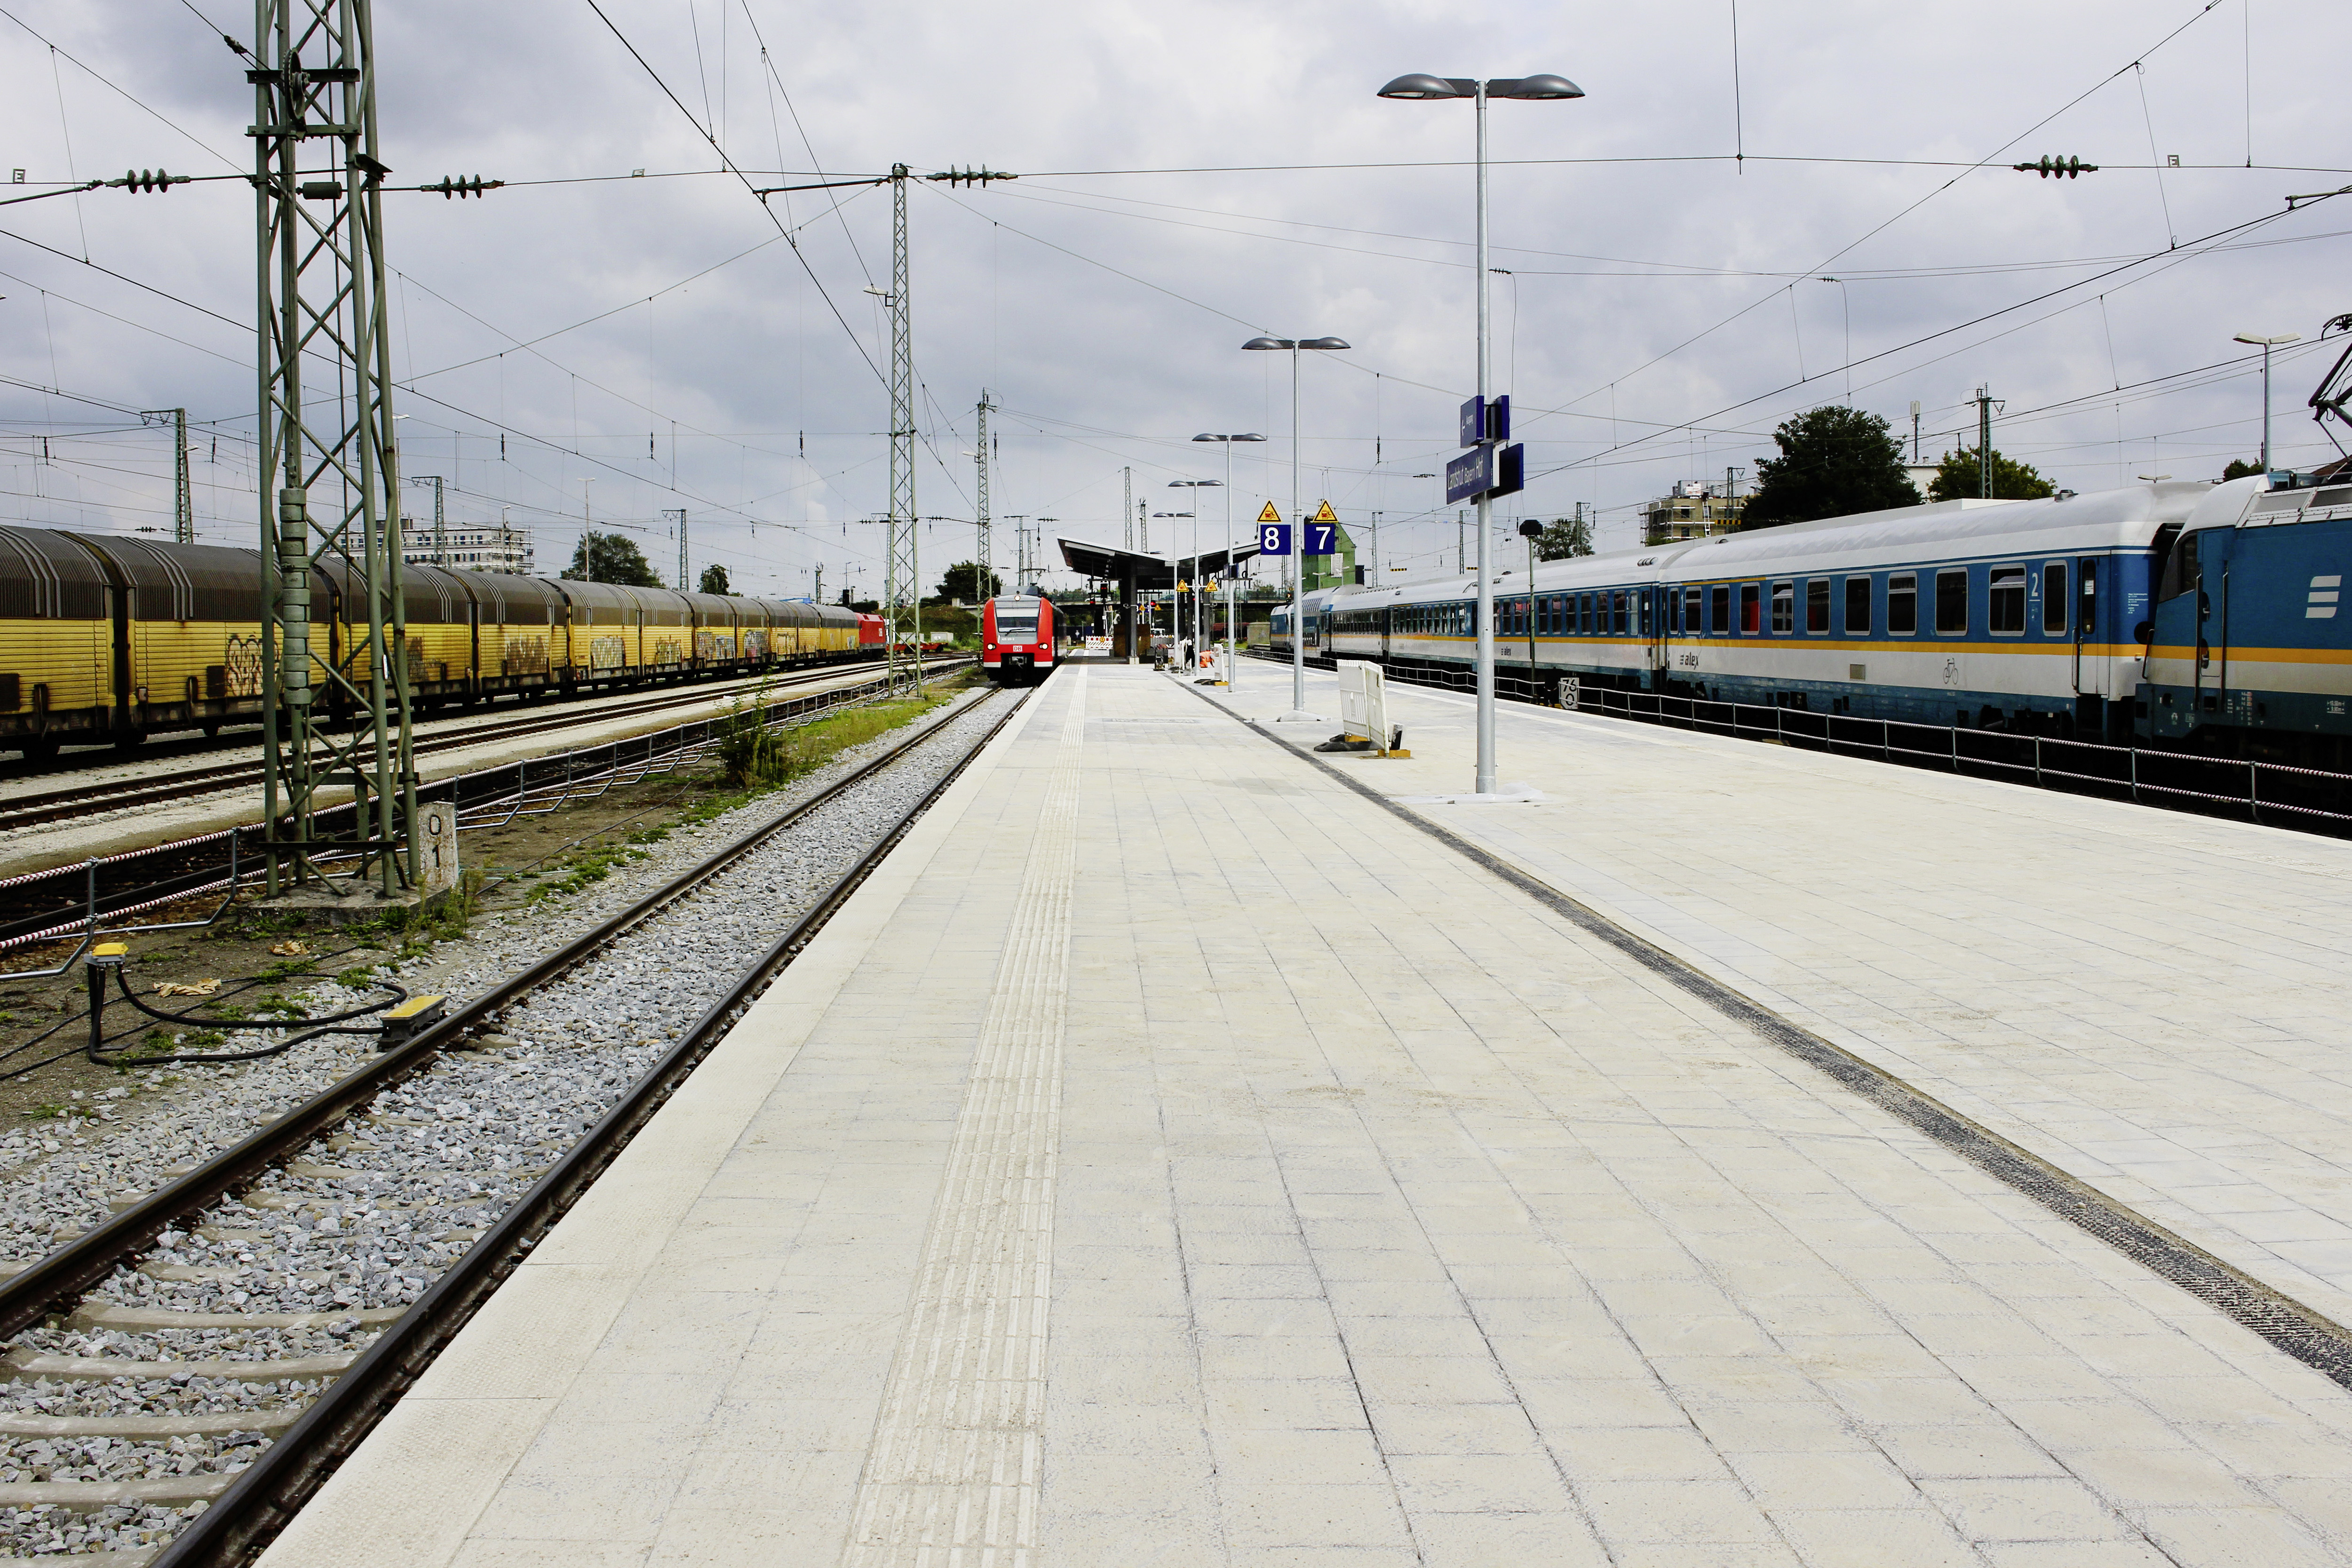 Bahnsteig, Landshut - Civiele bouwkunde